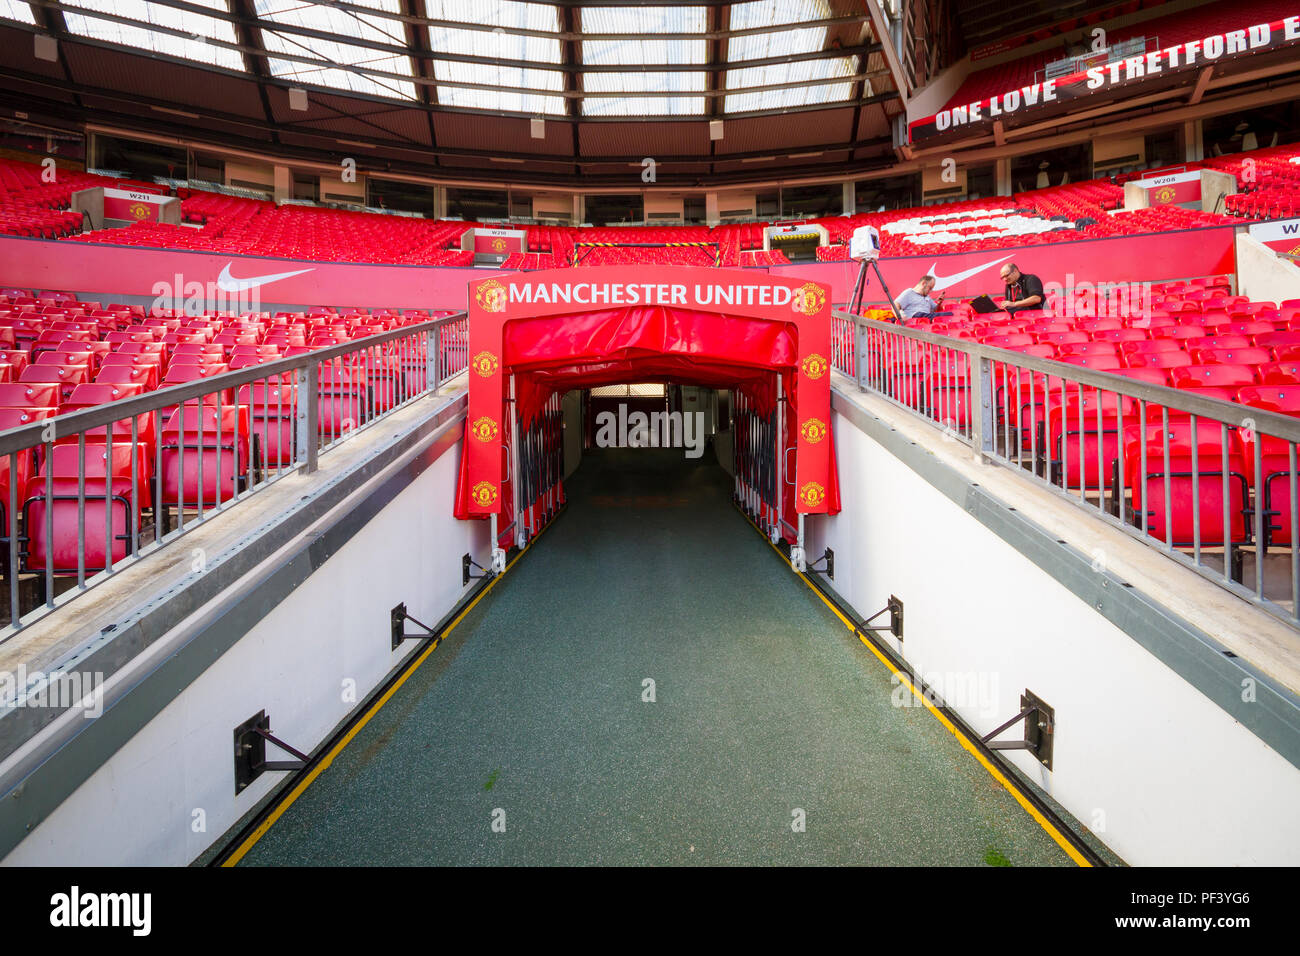 À l'intérieur d'Old Trafford. Maison de Manchester United Football Club Banque D'Images